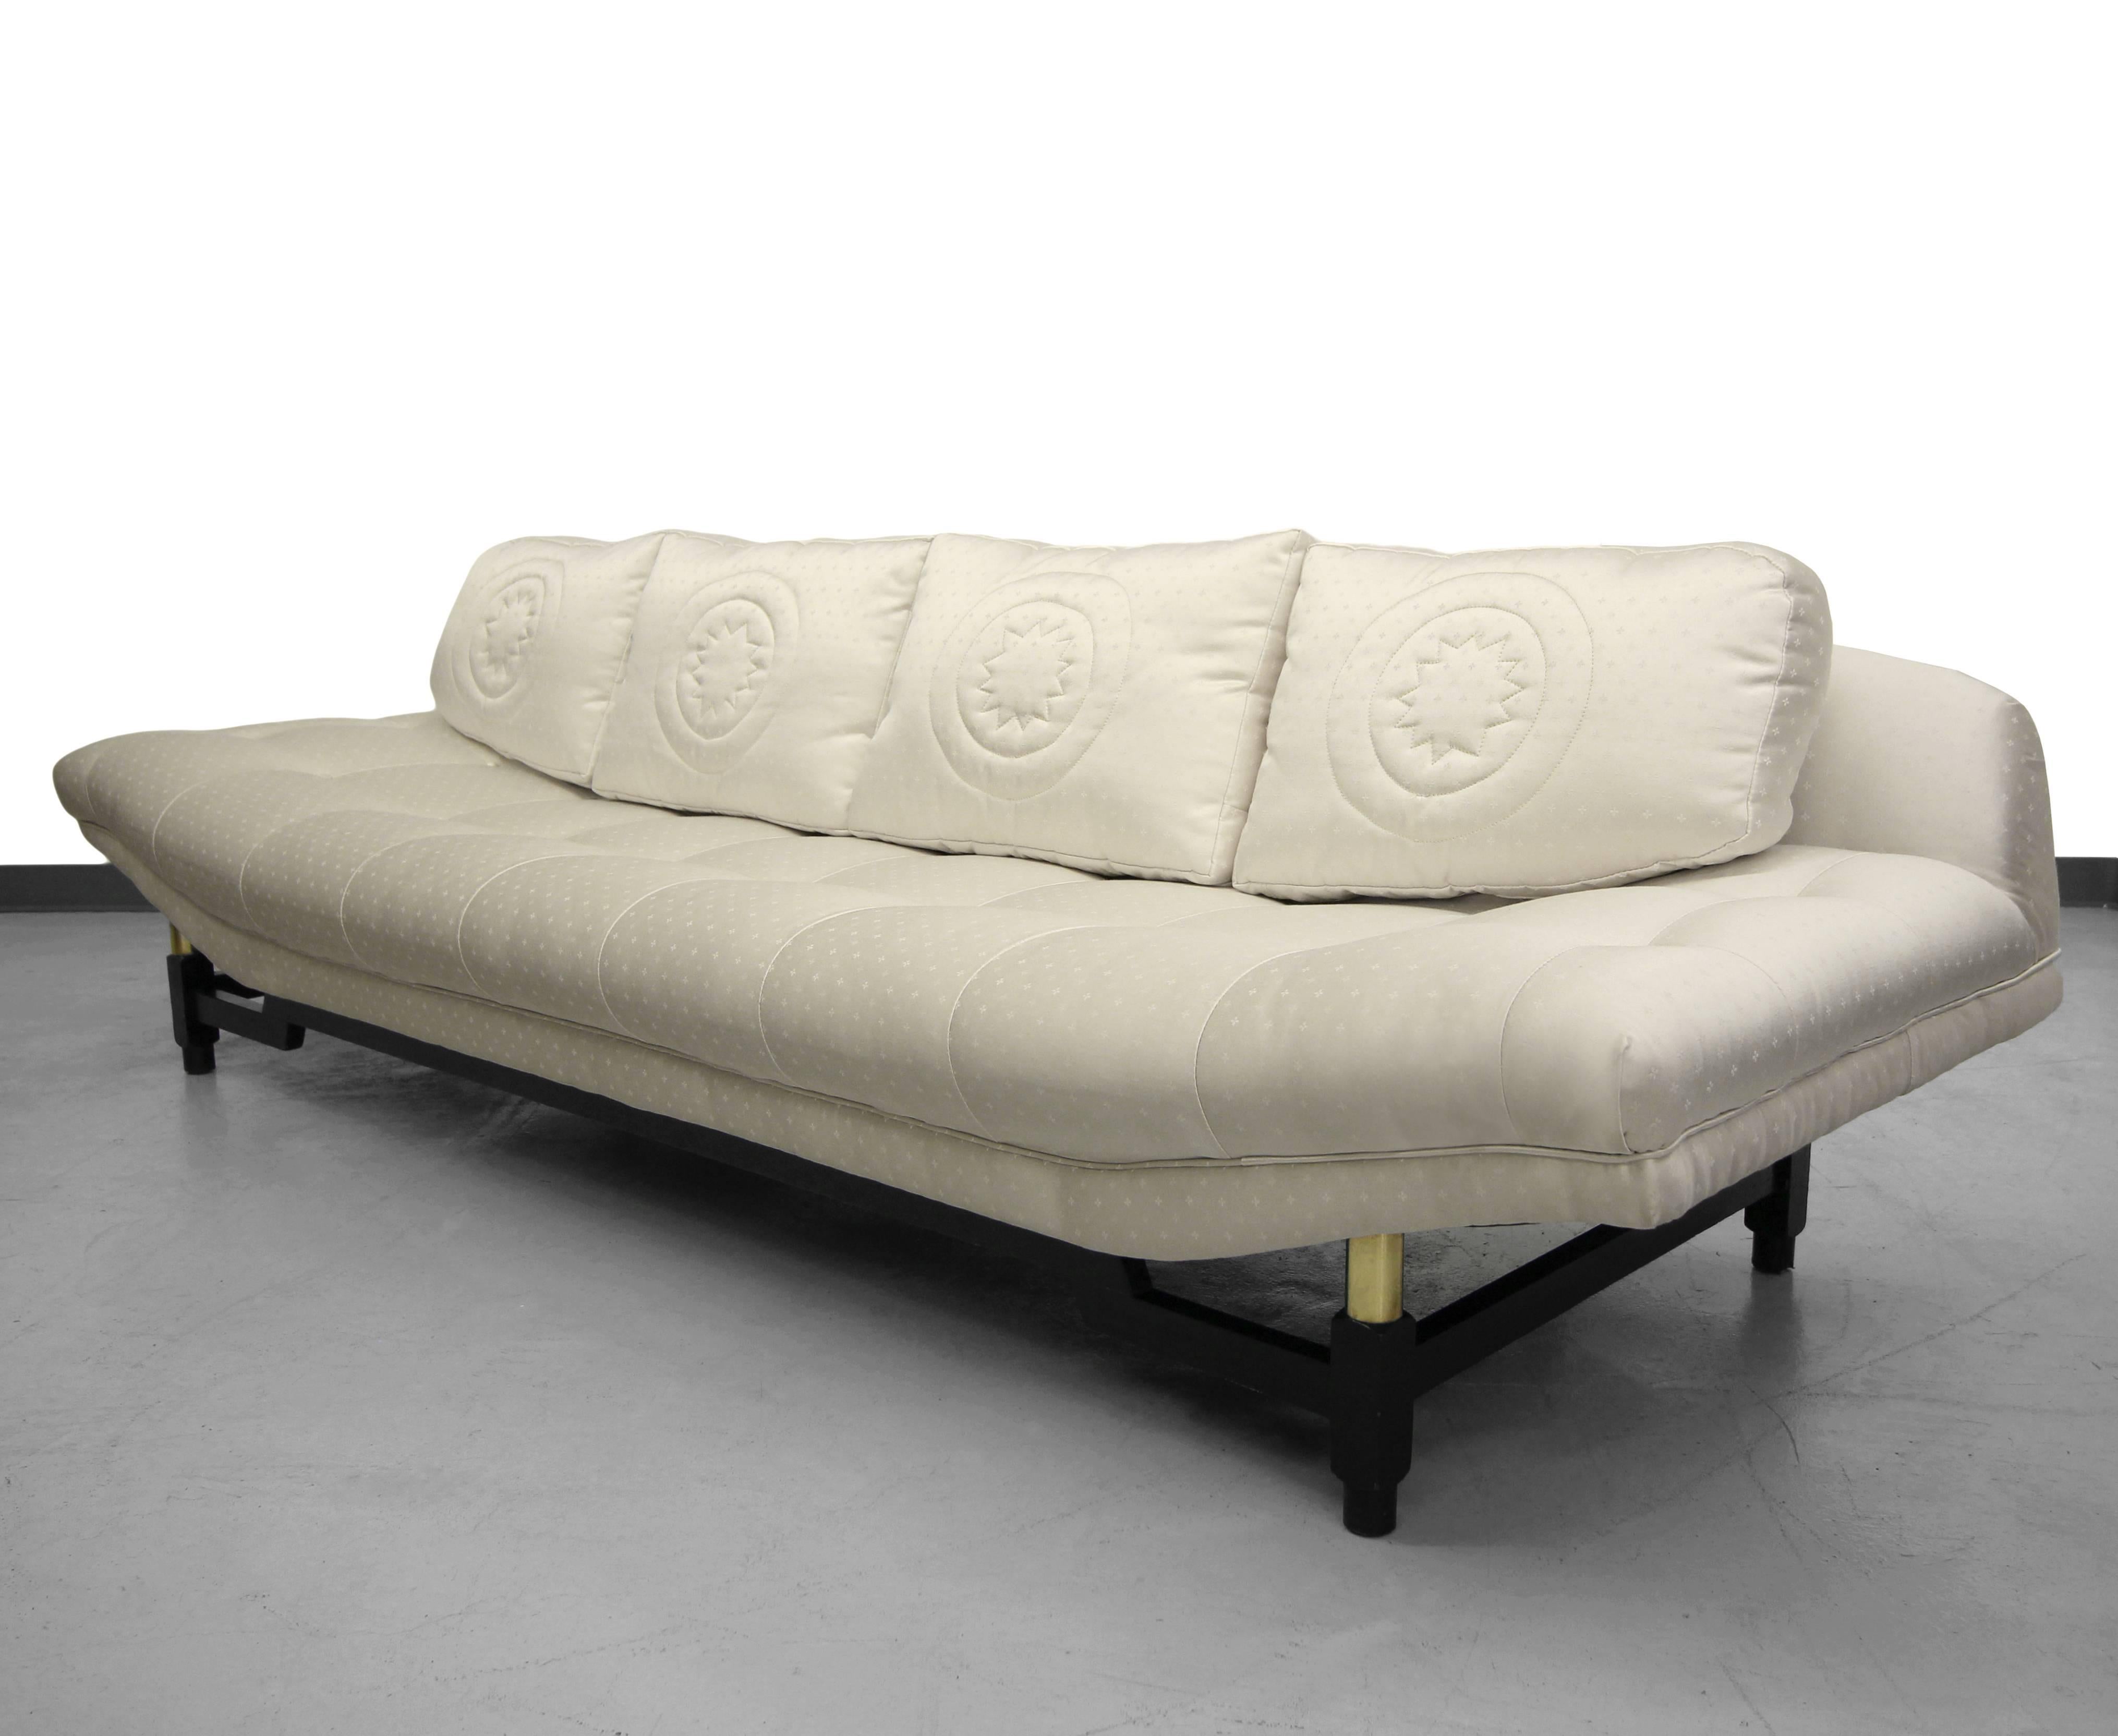 Mid-Century Sofa Gondola von Baker Furniture.  Das Sofa hat sehr klare Linien mit einem Hauch von asiatischem Flair. Dieses schöne Sofa ist anders als alle anderen Gondelsofas. 

Sockel aus schwarz lackiertem Rohrholz mit Messingdetails. Der Stoff